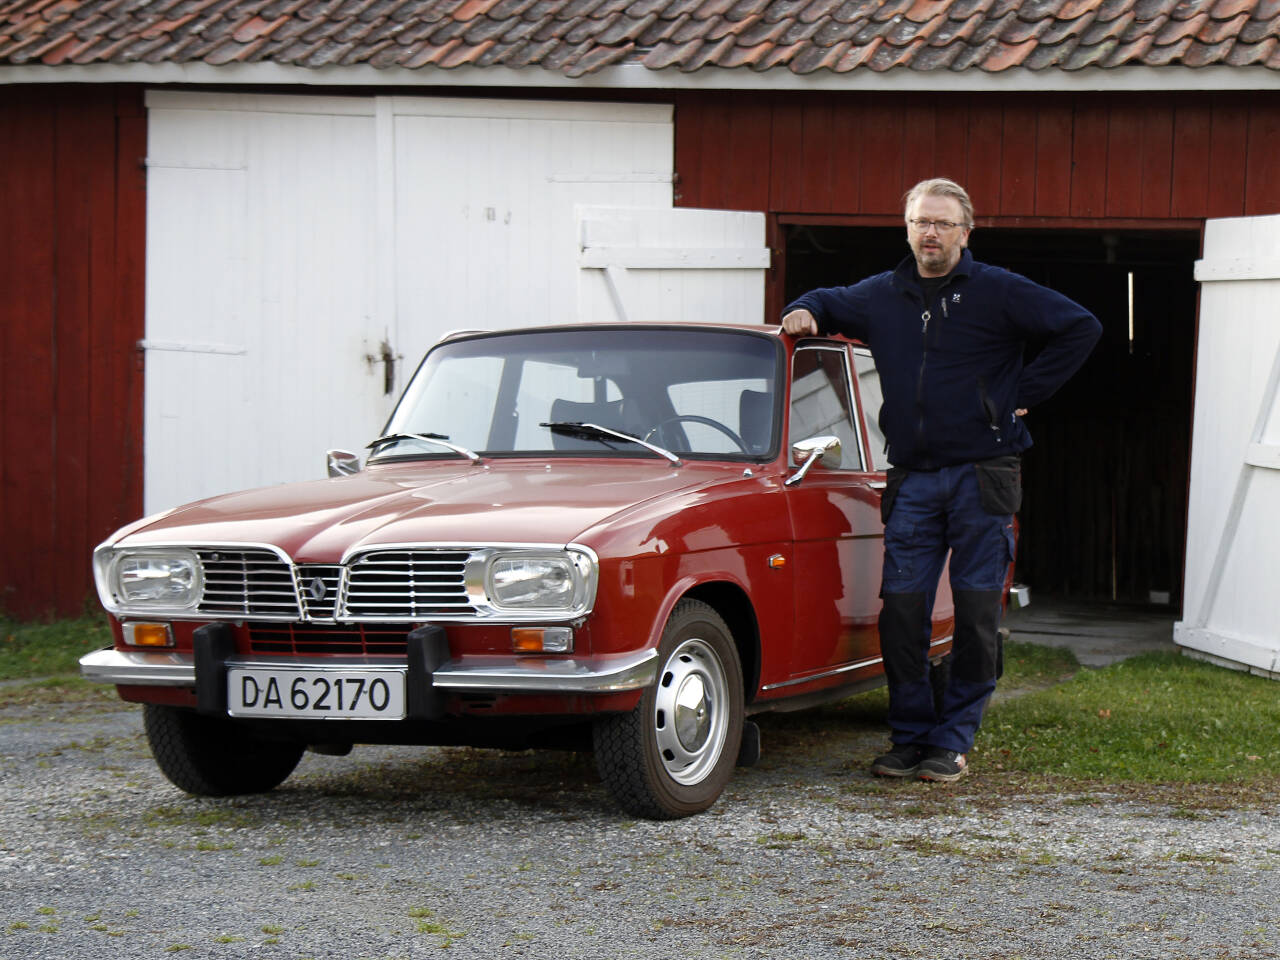 SAMLER: Magne Ludvigsen har mange biler, særlig av merket Renault. Her er bruksbilen, en Renault 16 TL fra 1972, kjøpt sommeren 2020. Foto: Morten Abrahamsen / NTB